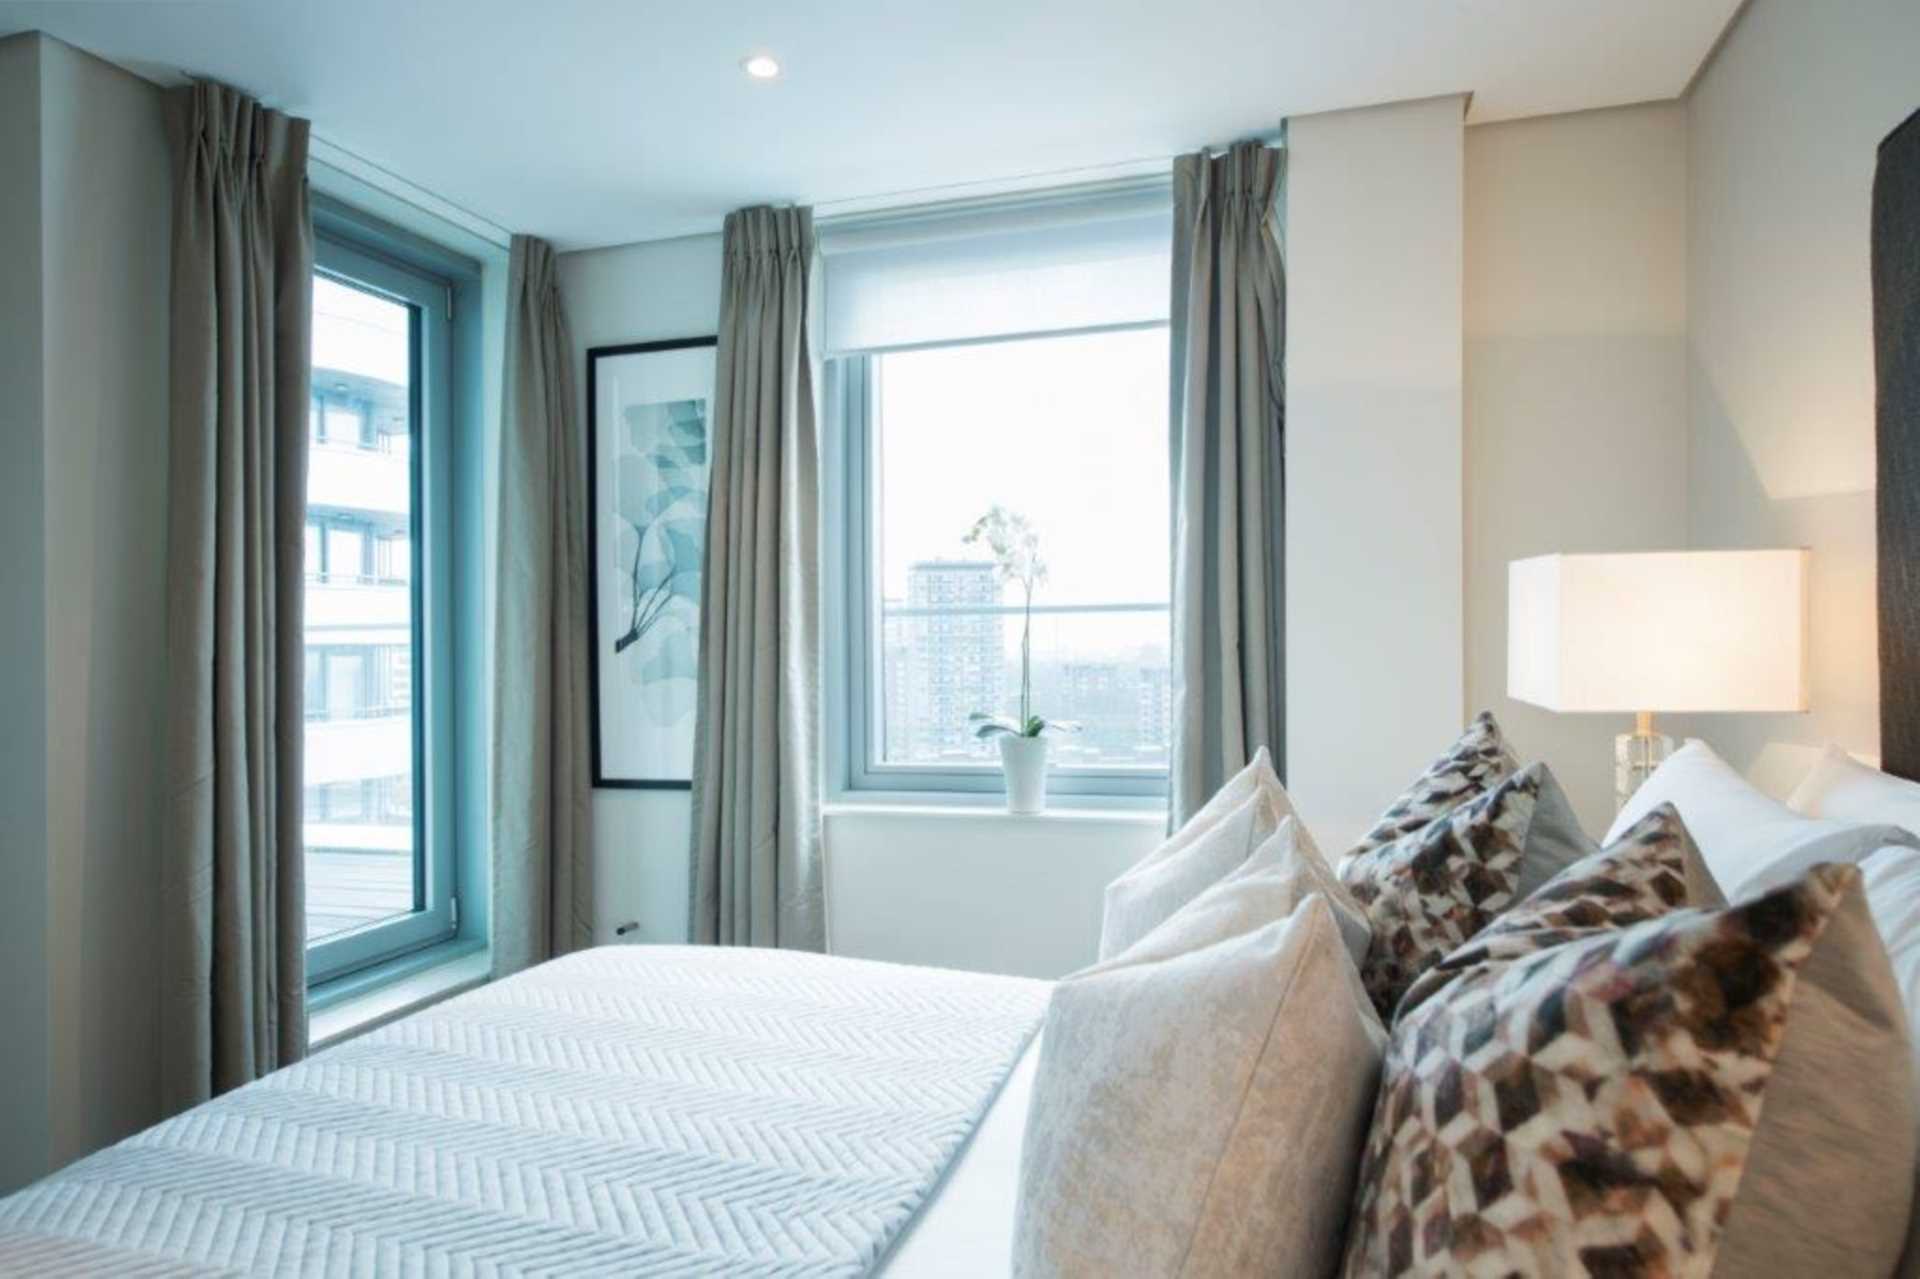 London W2 1AP 3 bed flat rental property internal/external image-4